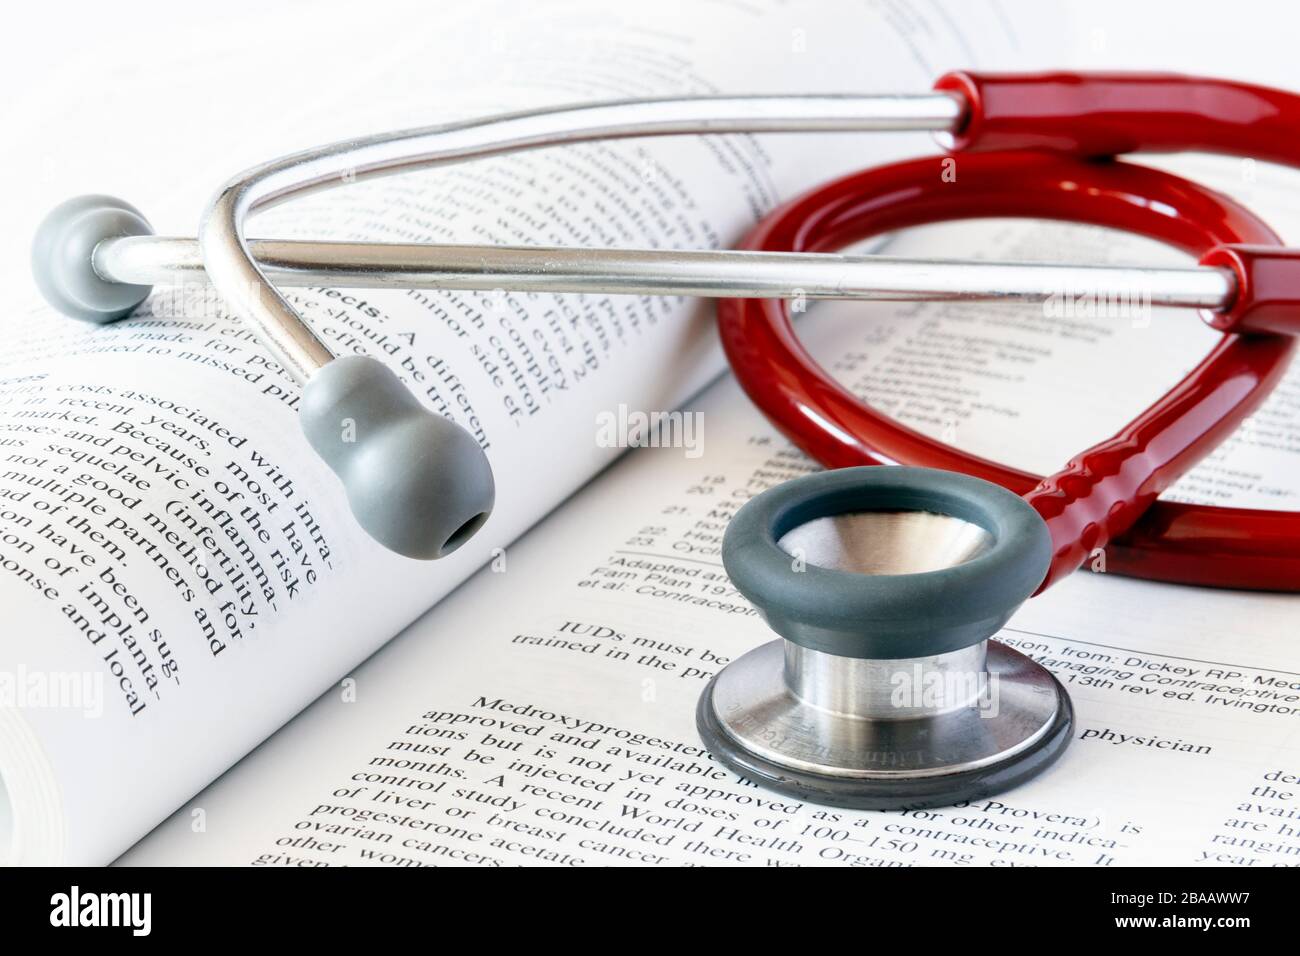 Ein rotes Stethoskop auf einem offenen medizinischen Lehrbuch Stockfoto